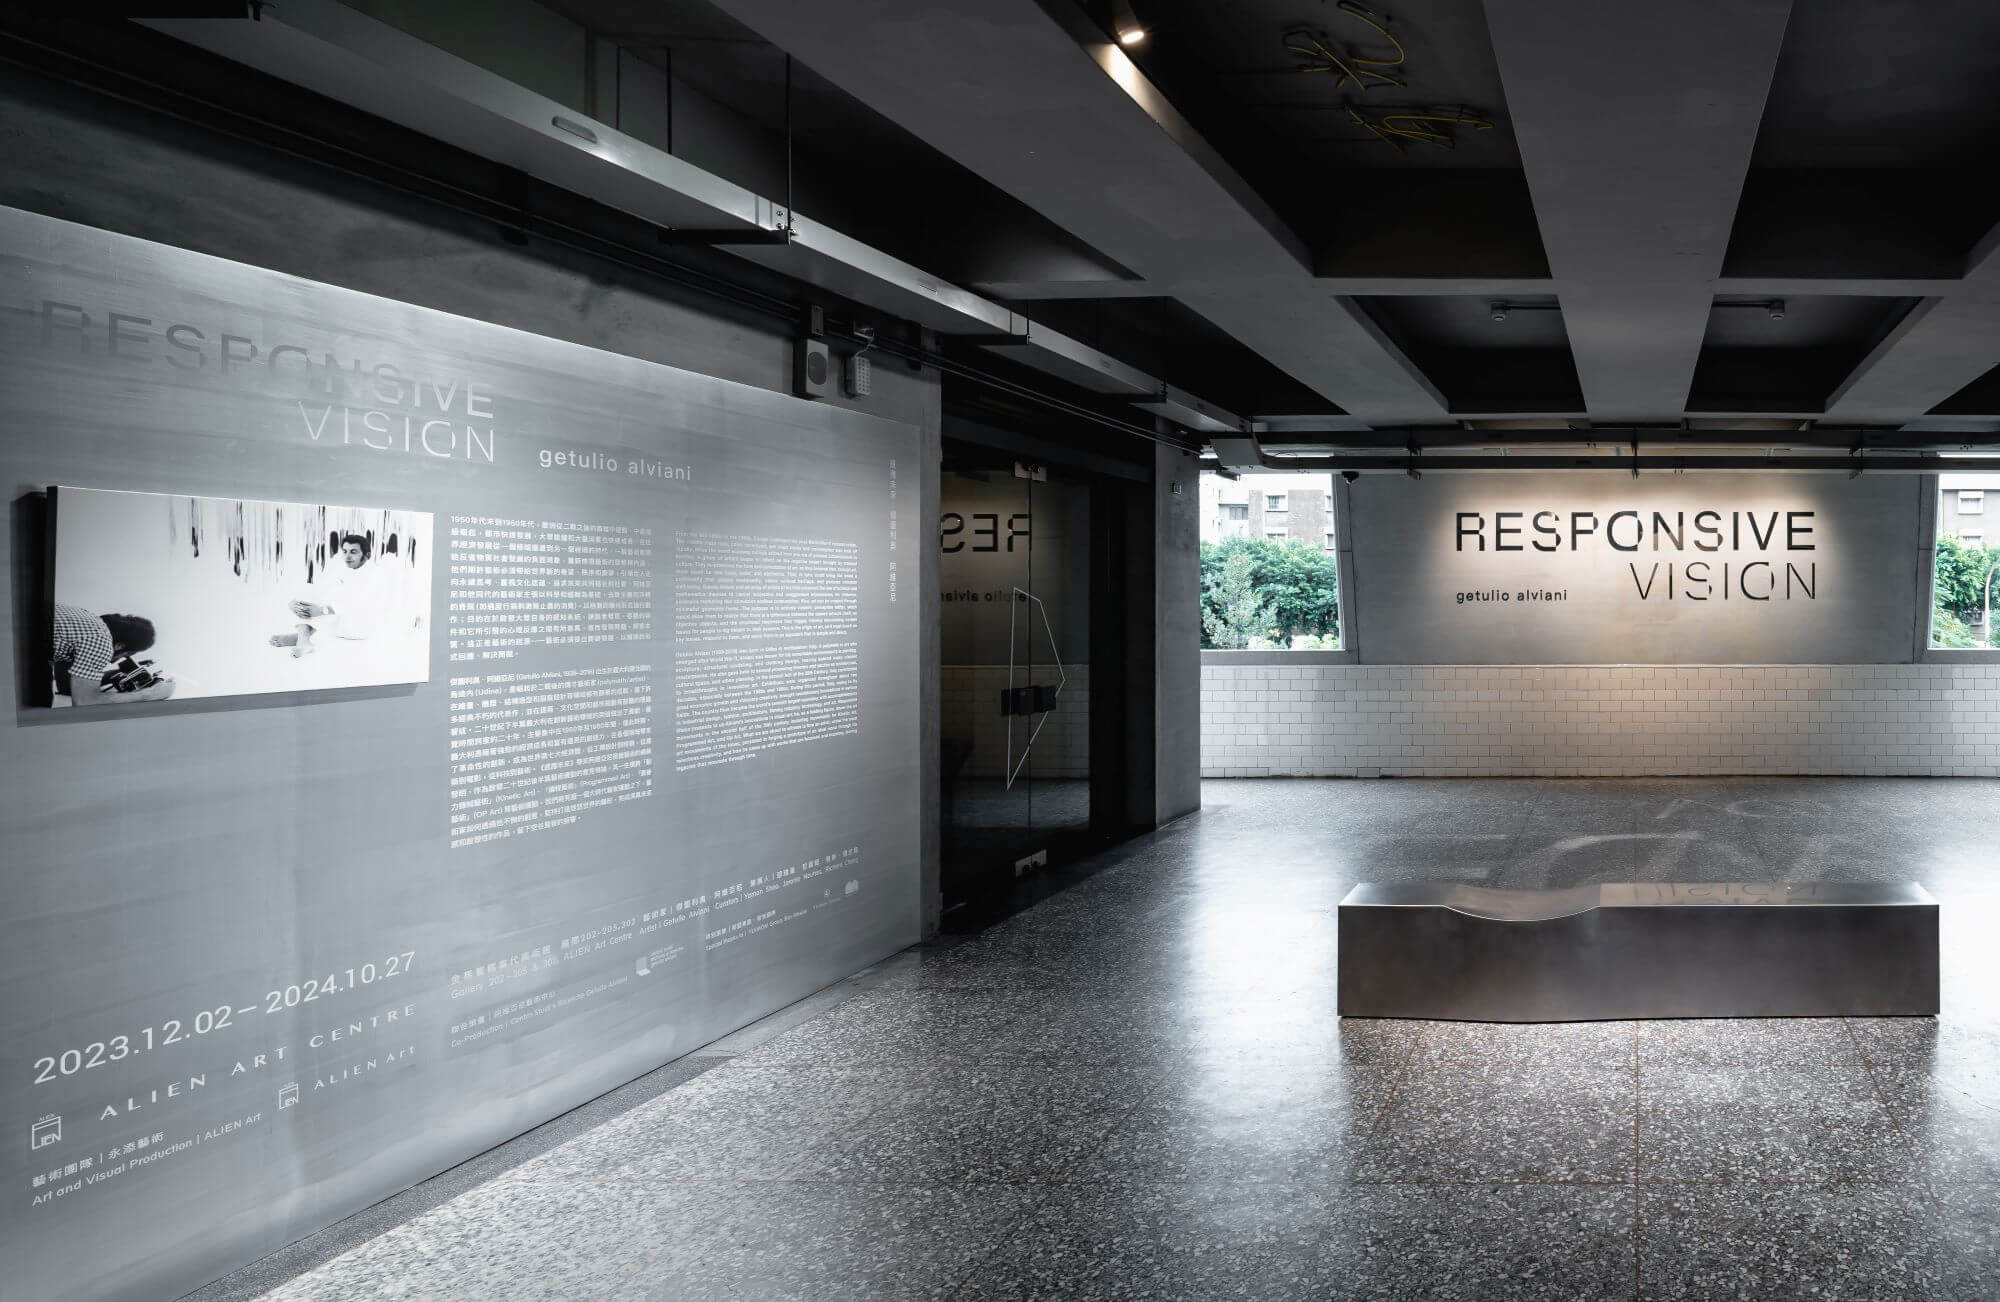 金馬賓館當代美術館年末大展《感應未來》帶來義大利當代藝術家傑圖利奧・阿維亞尼視覺藝術的嶄新發明。